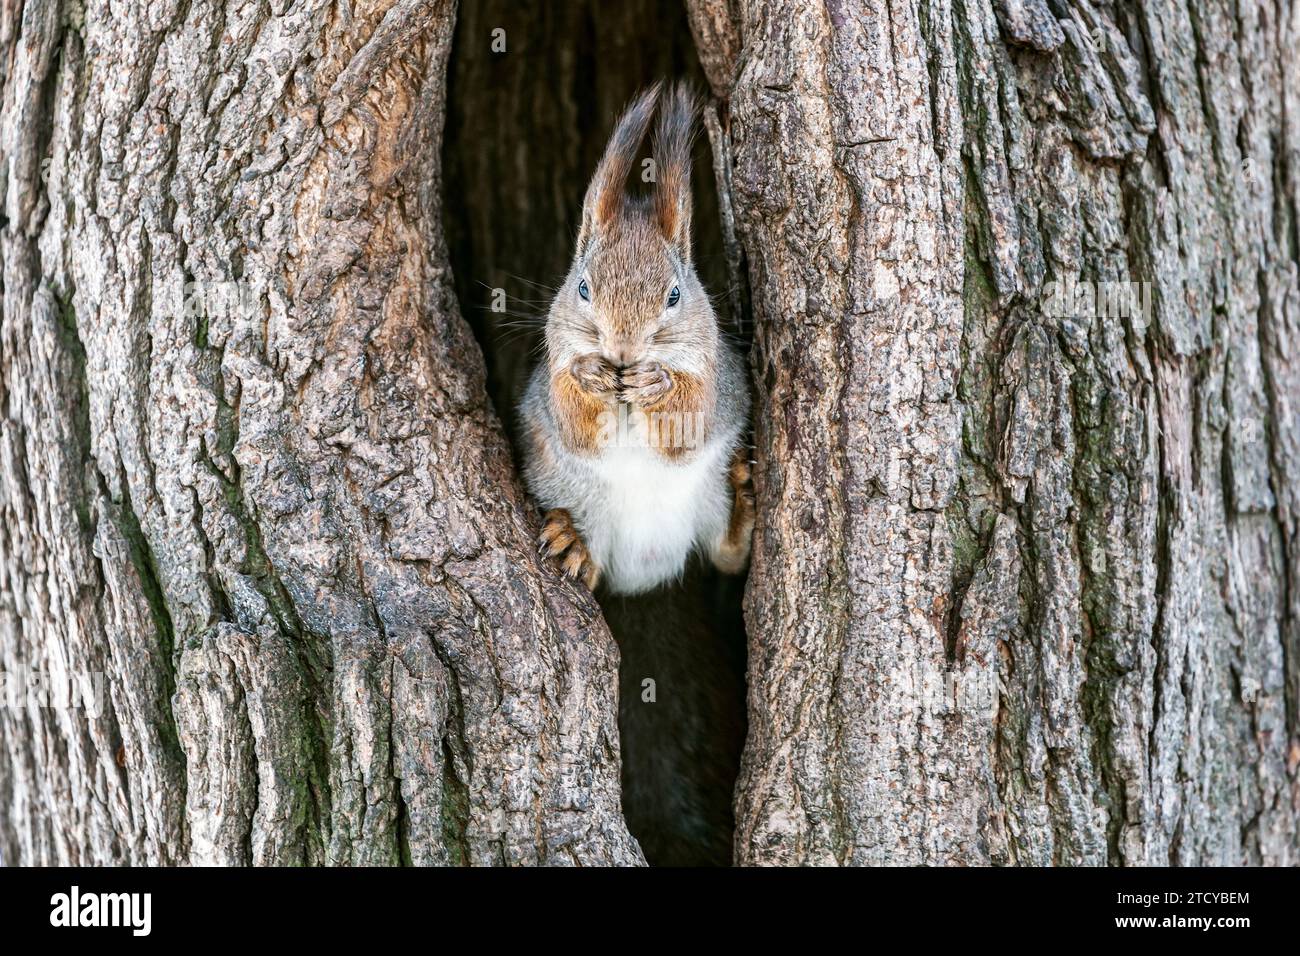 Lustiges rotes Eichhörnchen sitzt in einem großen hohlen Baum und isst eine Nuss. Stockfoto